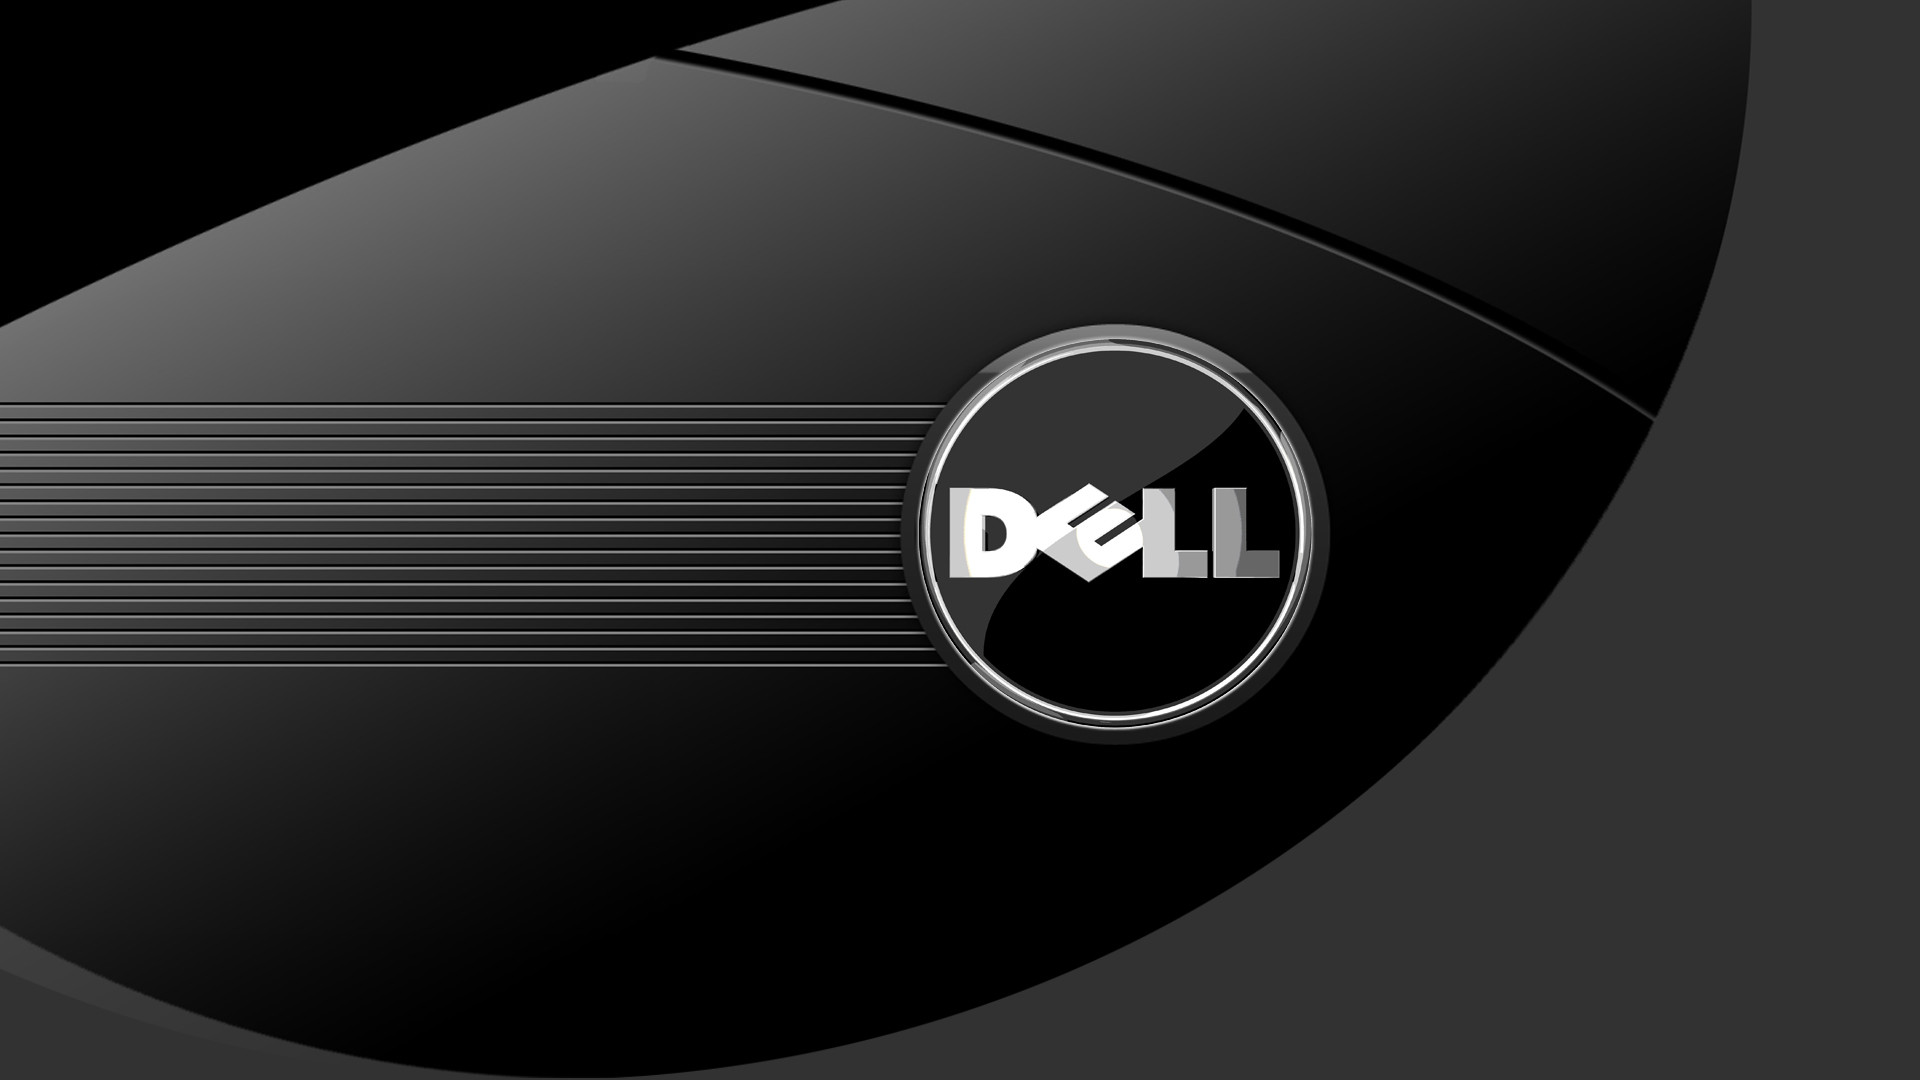 Dell Desktop Background